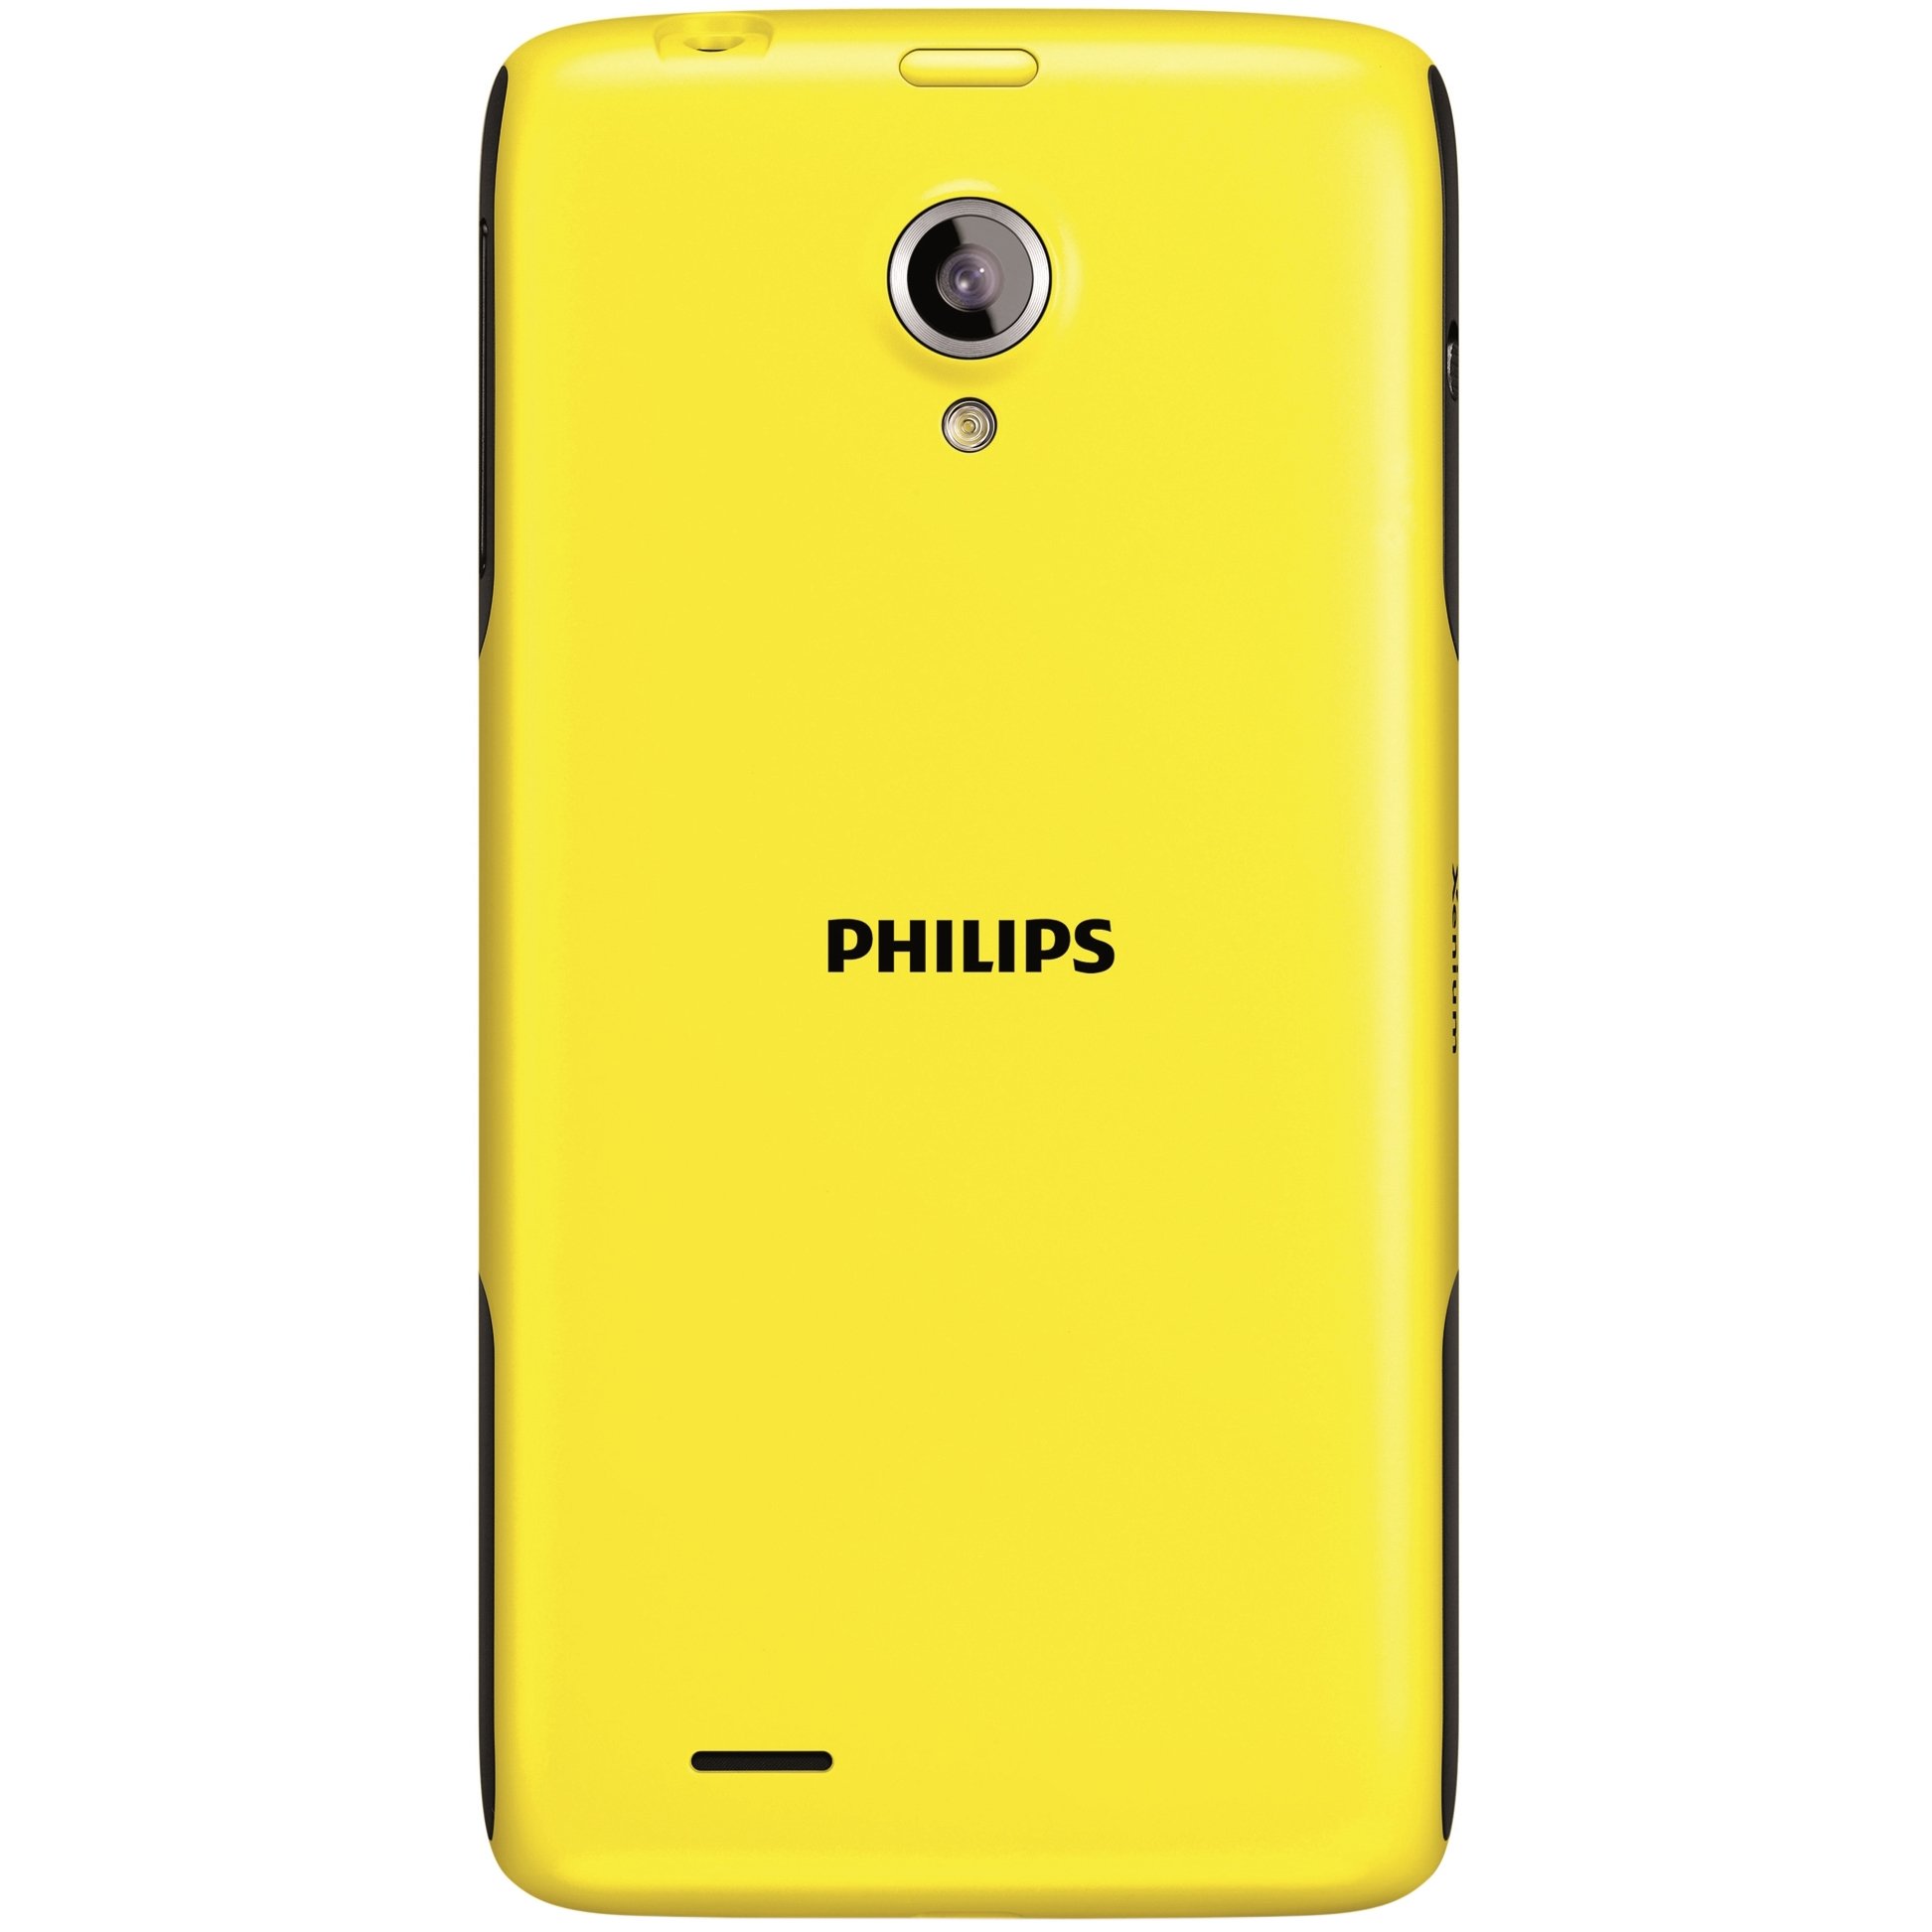 Филипс 6500. Philips Xenium w6500. Смартфон Филипс Xenium w6500. Philips Xenium 6500. Филипс ксениум 6500.